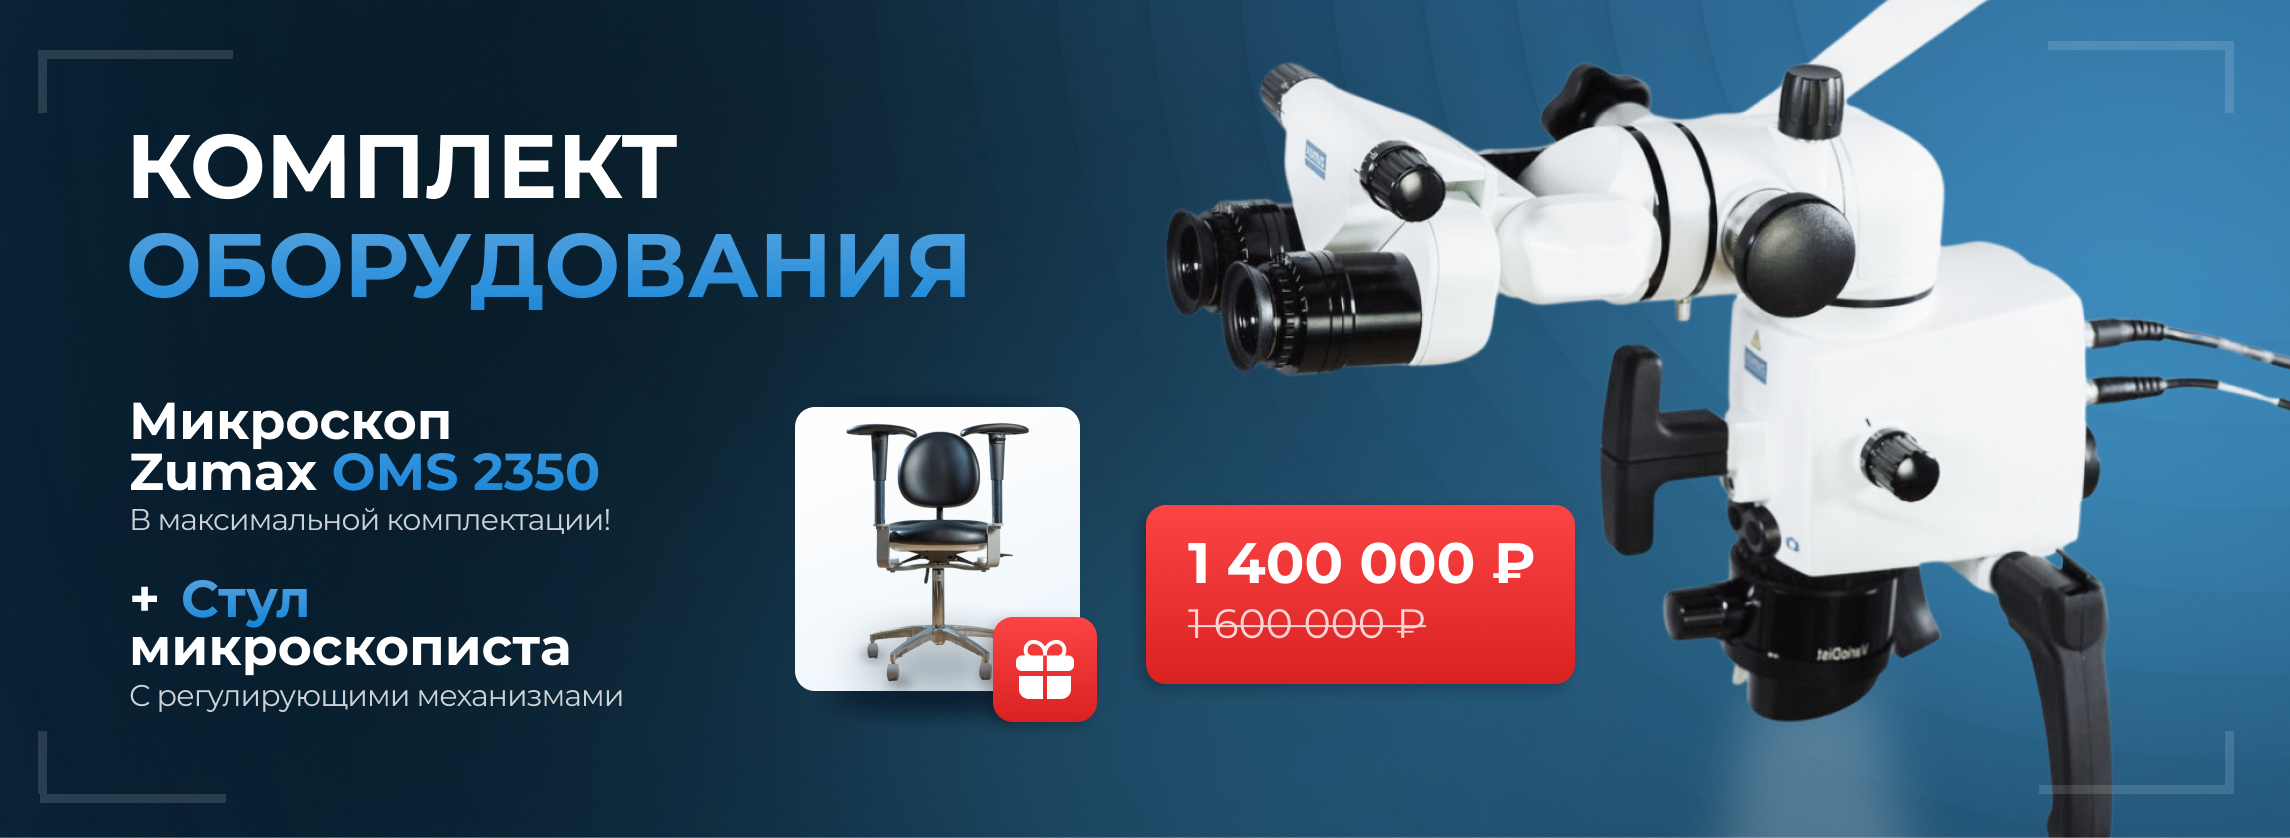 Микроскоп Zumax OMS 2350 по выгодной цене